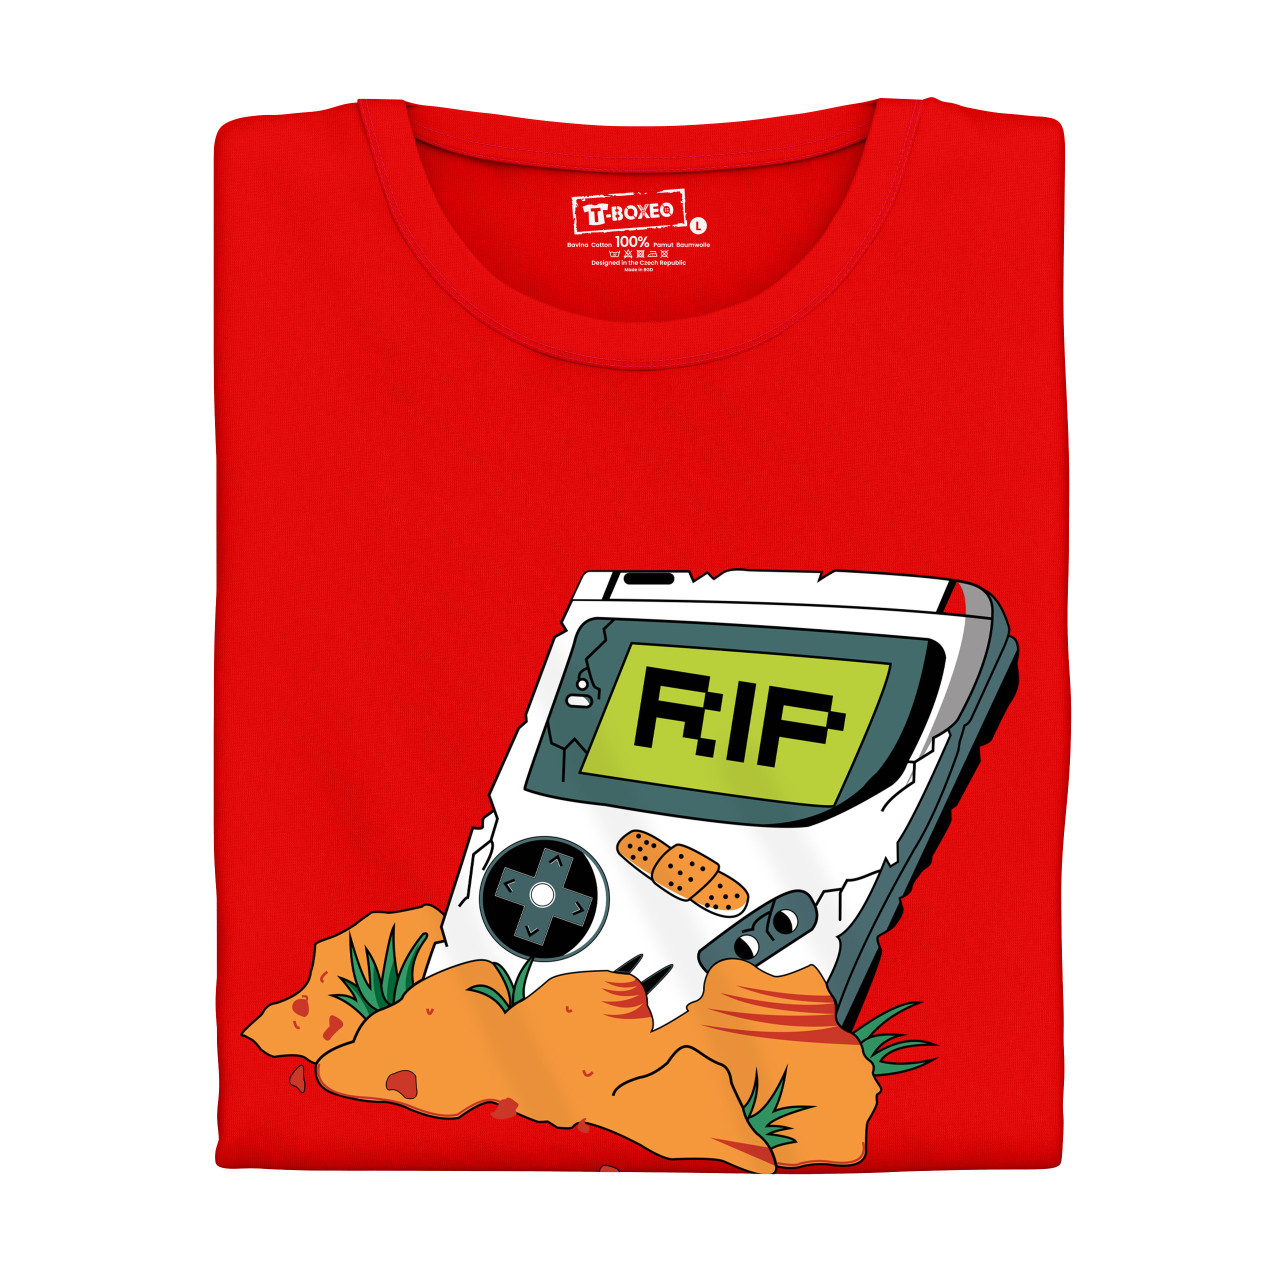 Pánské tričko s potiskem “RIP Gameboy”